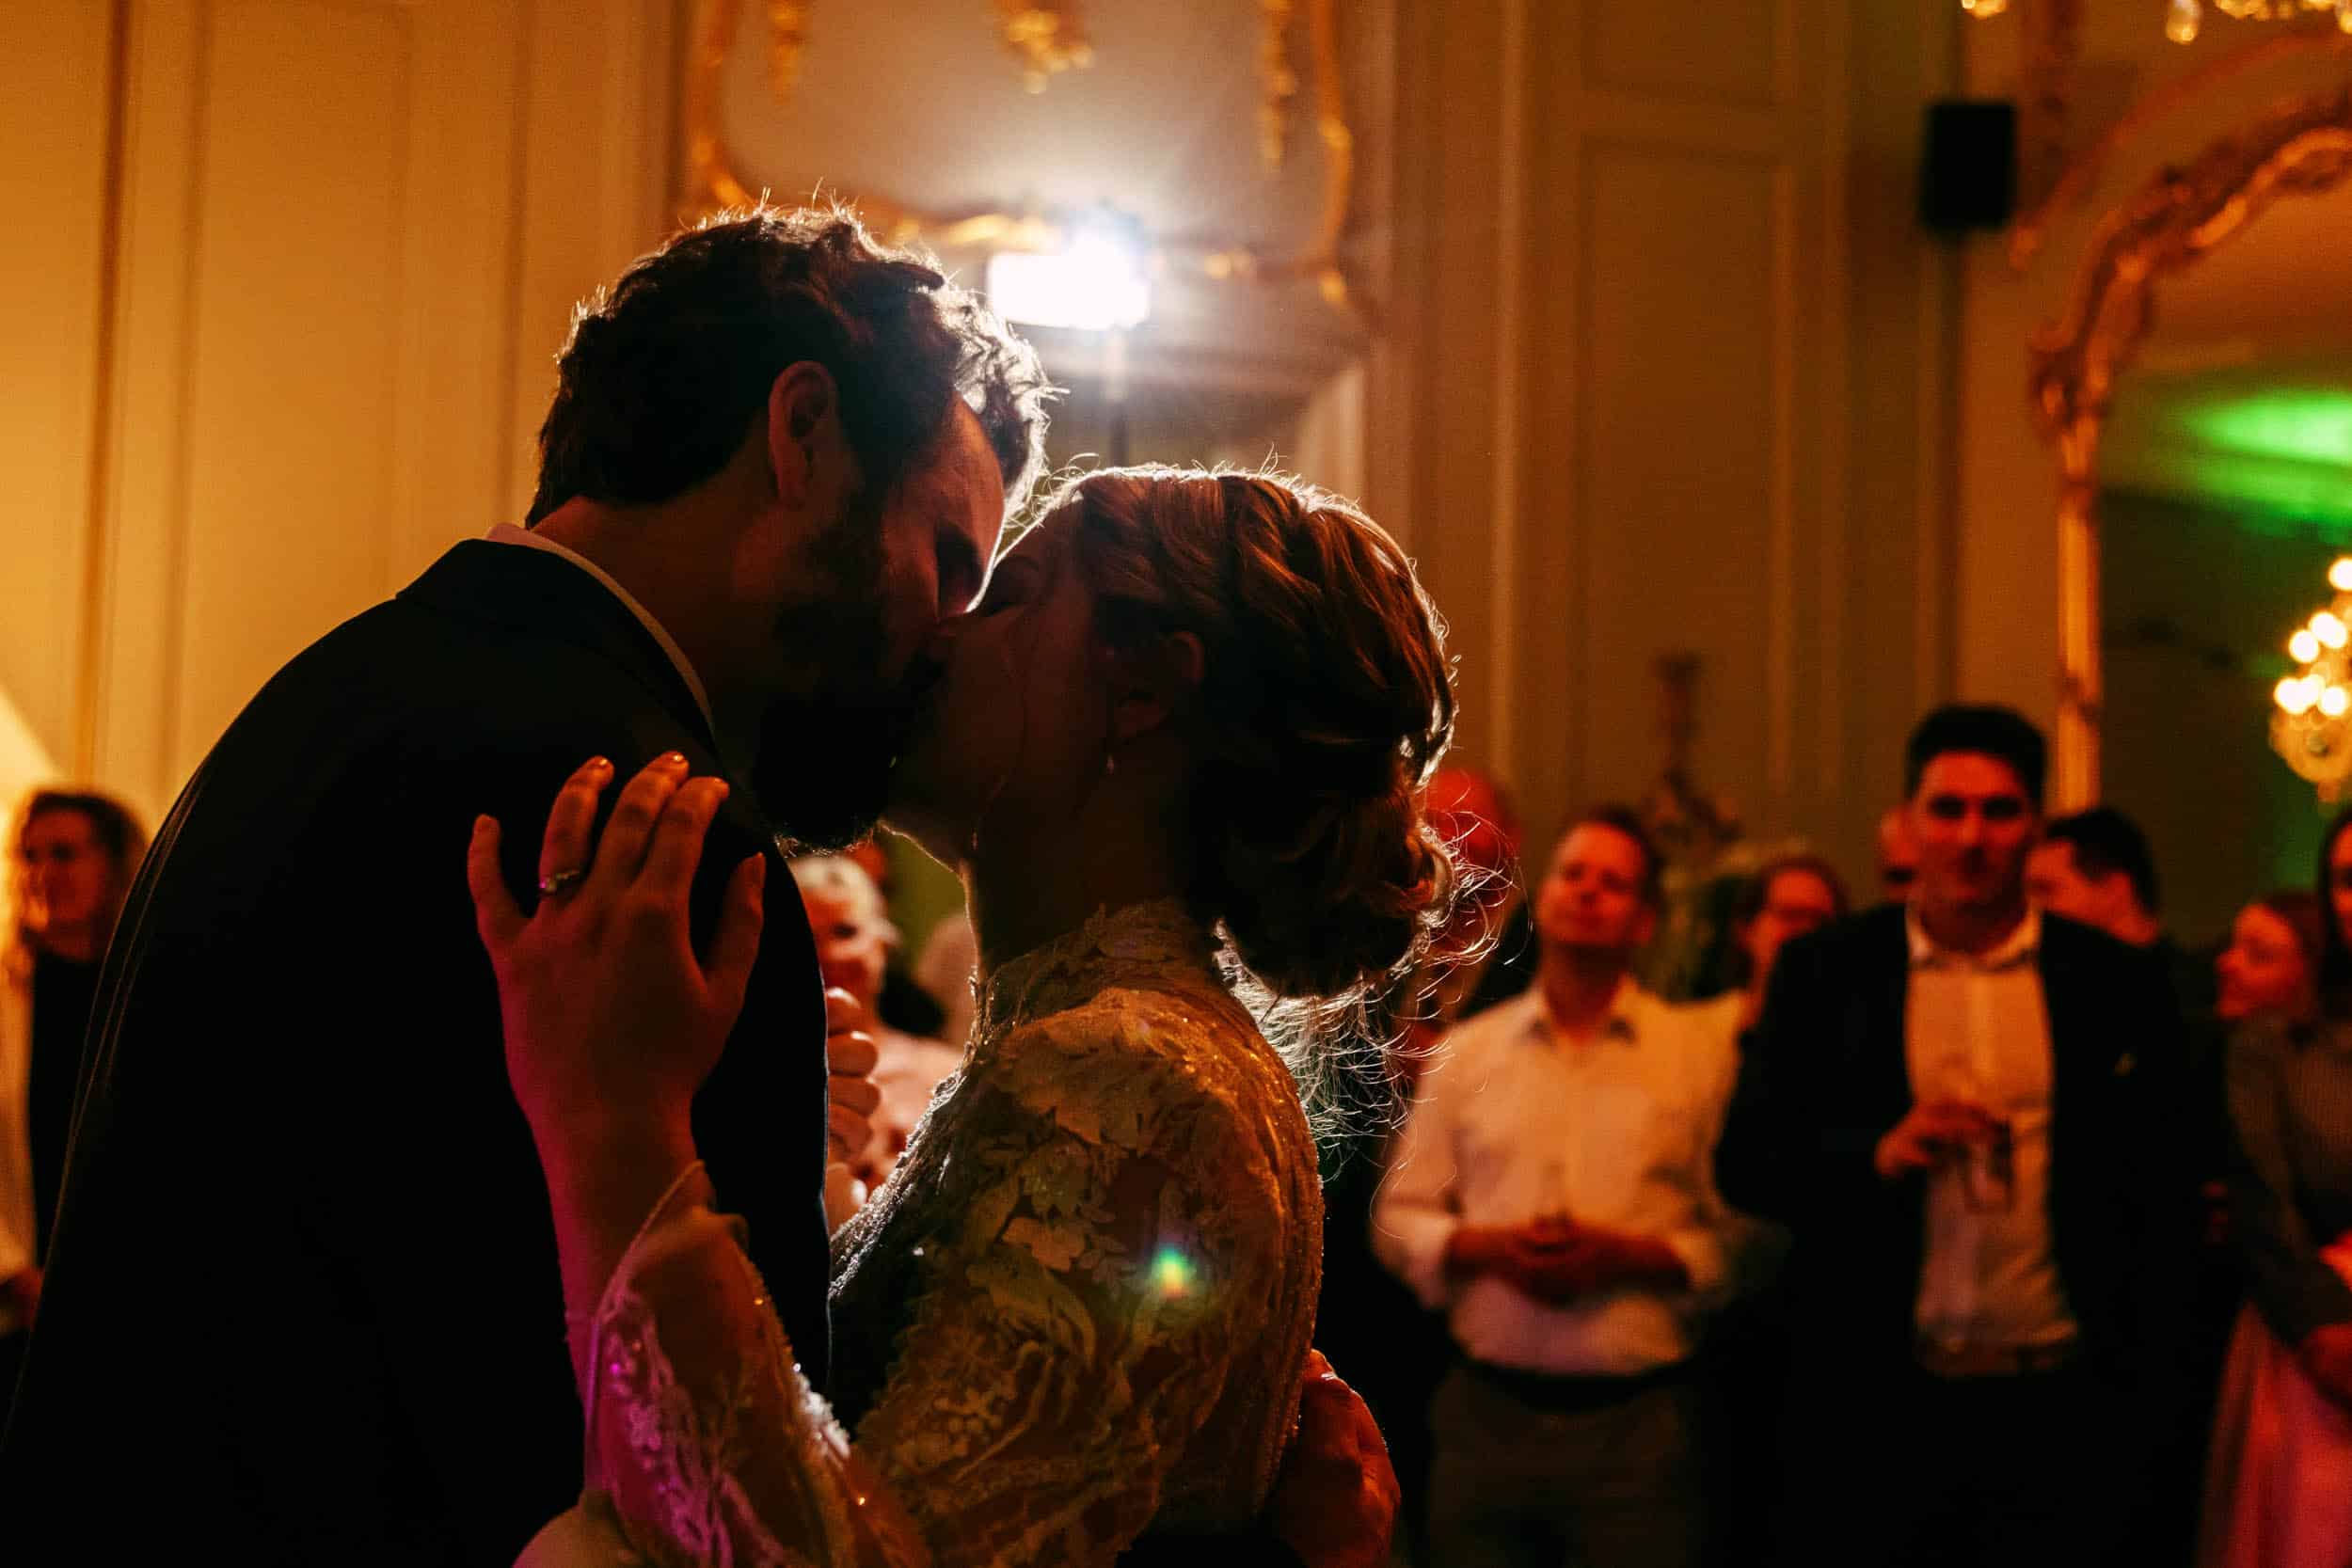 De perfecte trouwfoto van een bruid en bruidegom die een kus delen in een balzaal, vastgelegd door de trouwfotograaf.